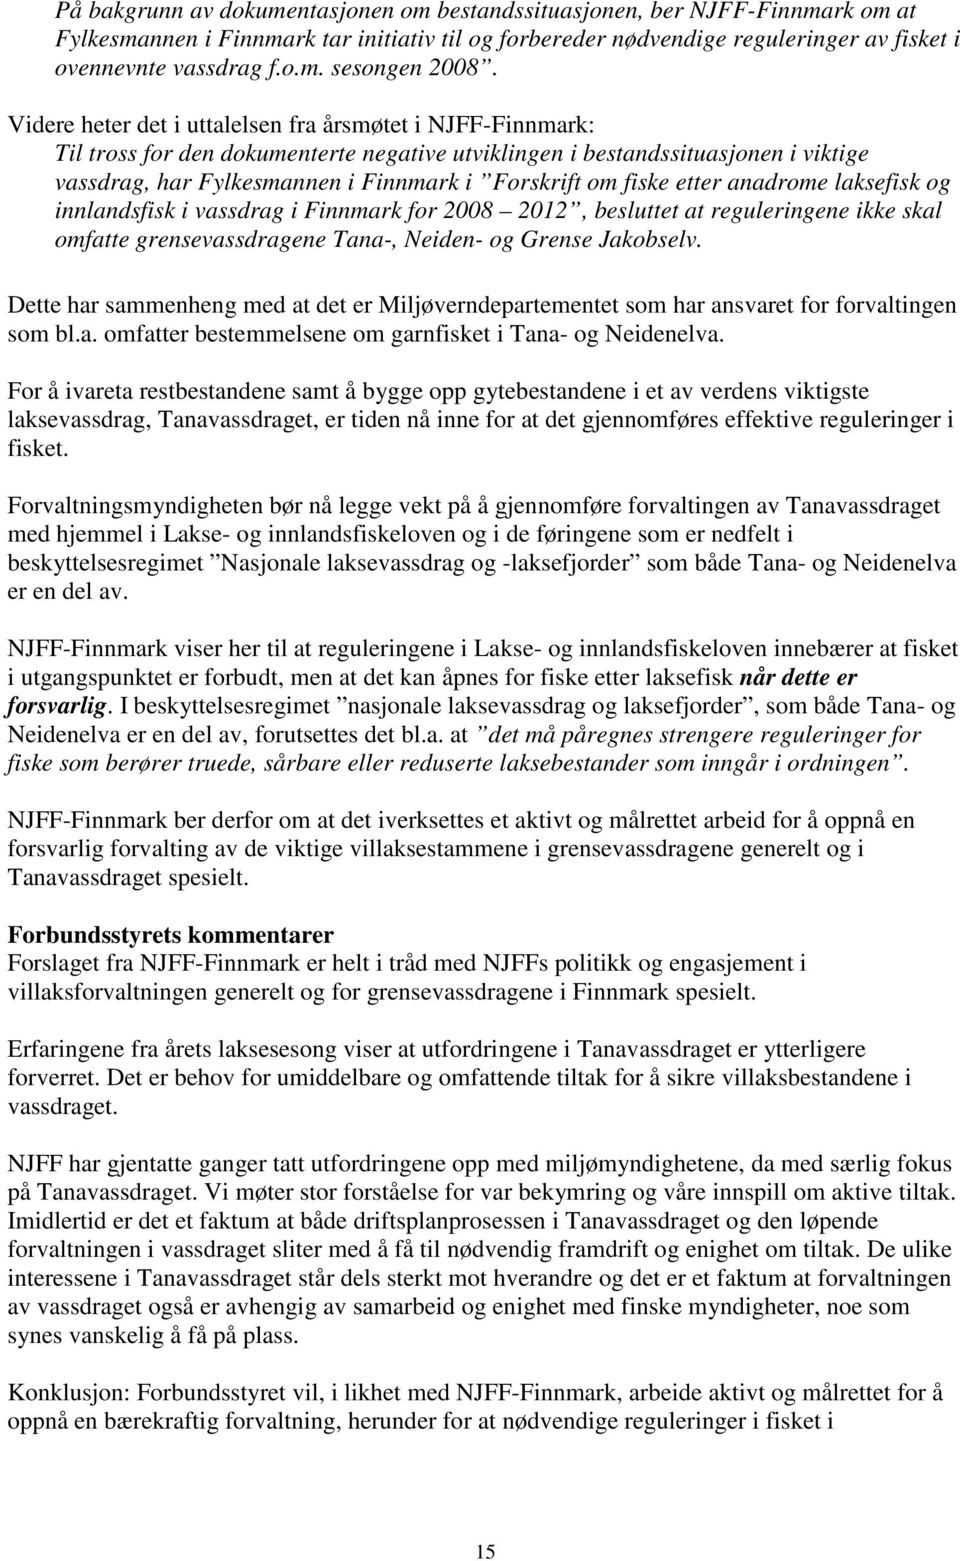 fiske etter anadrome laksefisk og innlandsfisk i vassdrag i Finnmark for 2008 2012, besluttet at reguleringene ikke skal omfatte grensevassdragene Tana-, Neiden- og Grense Jakobselv.